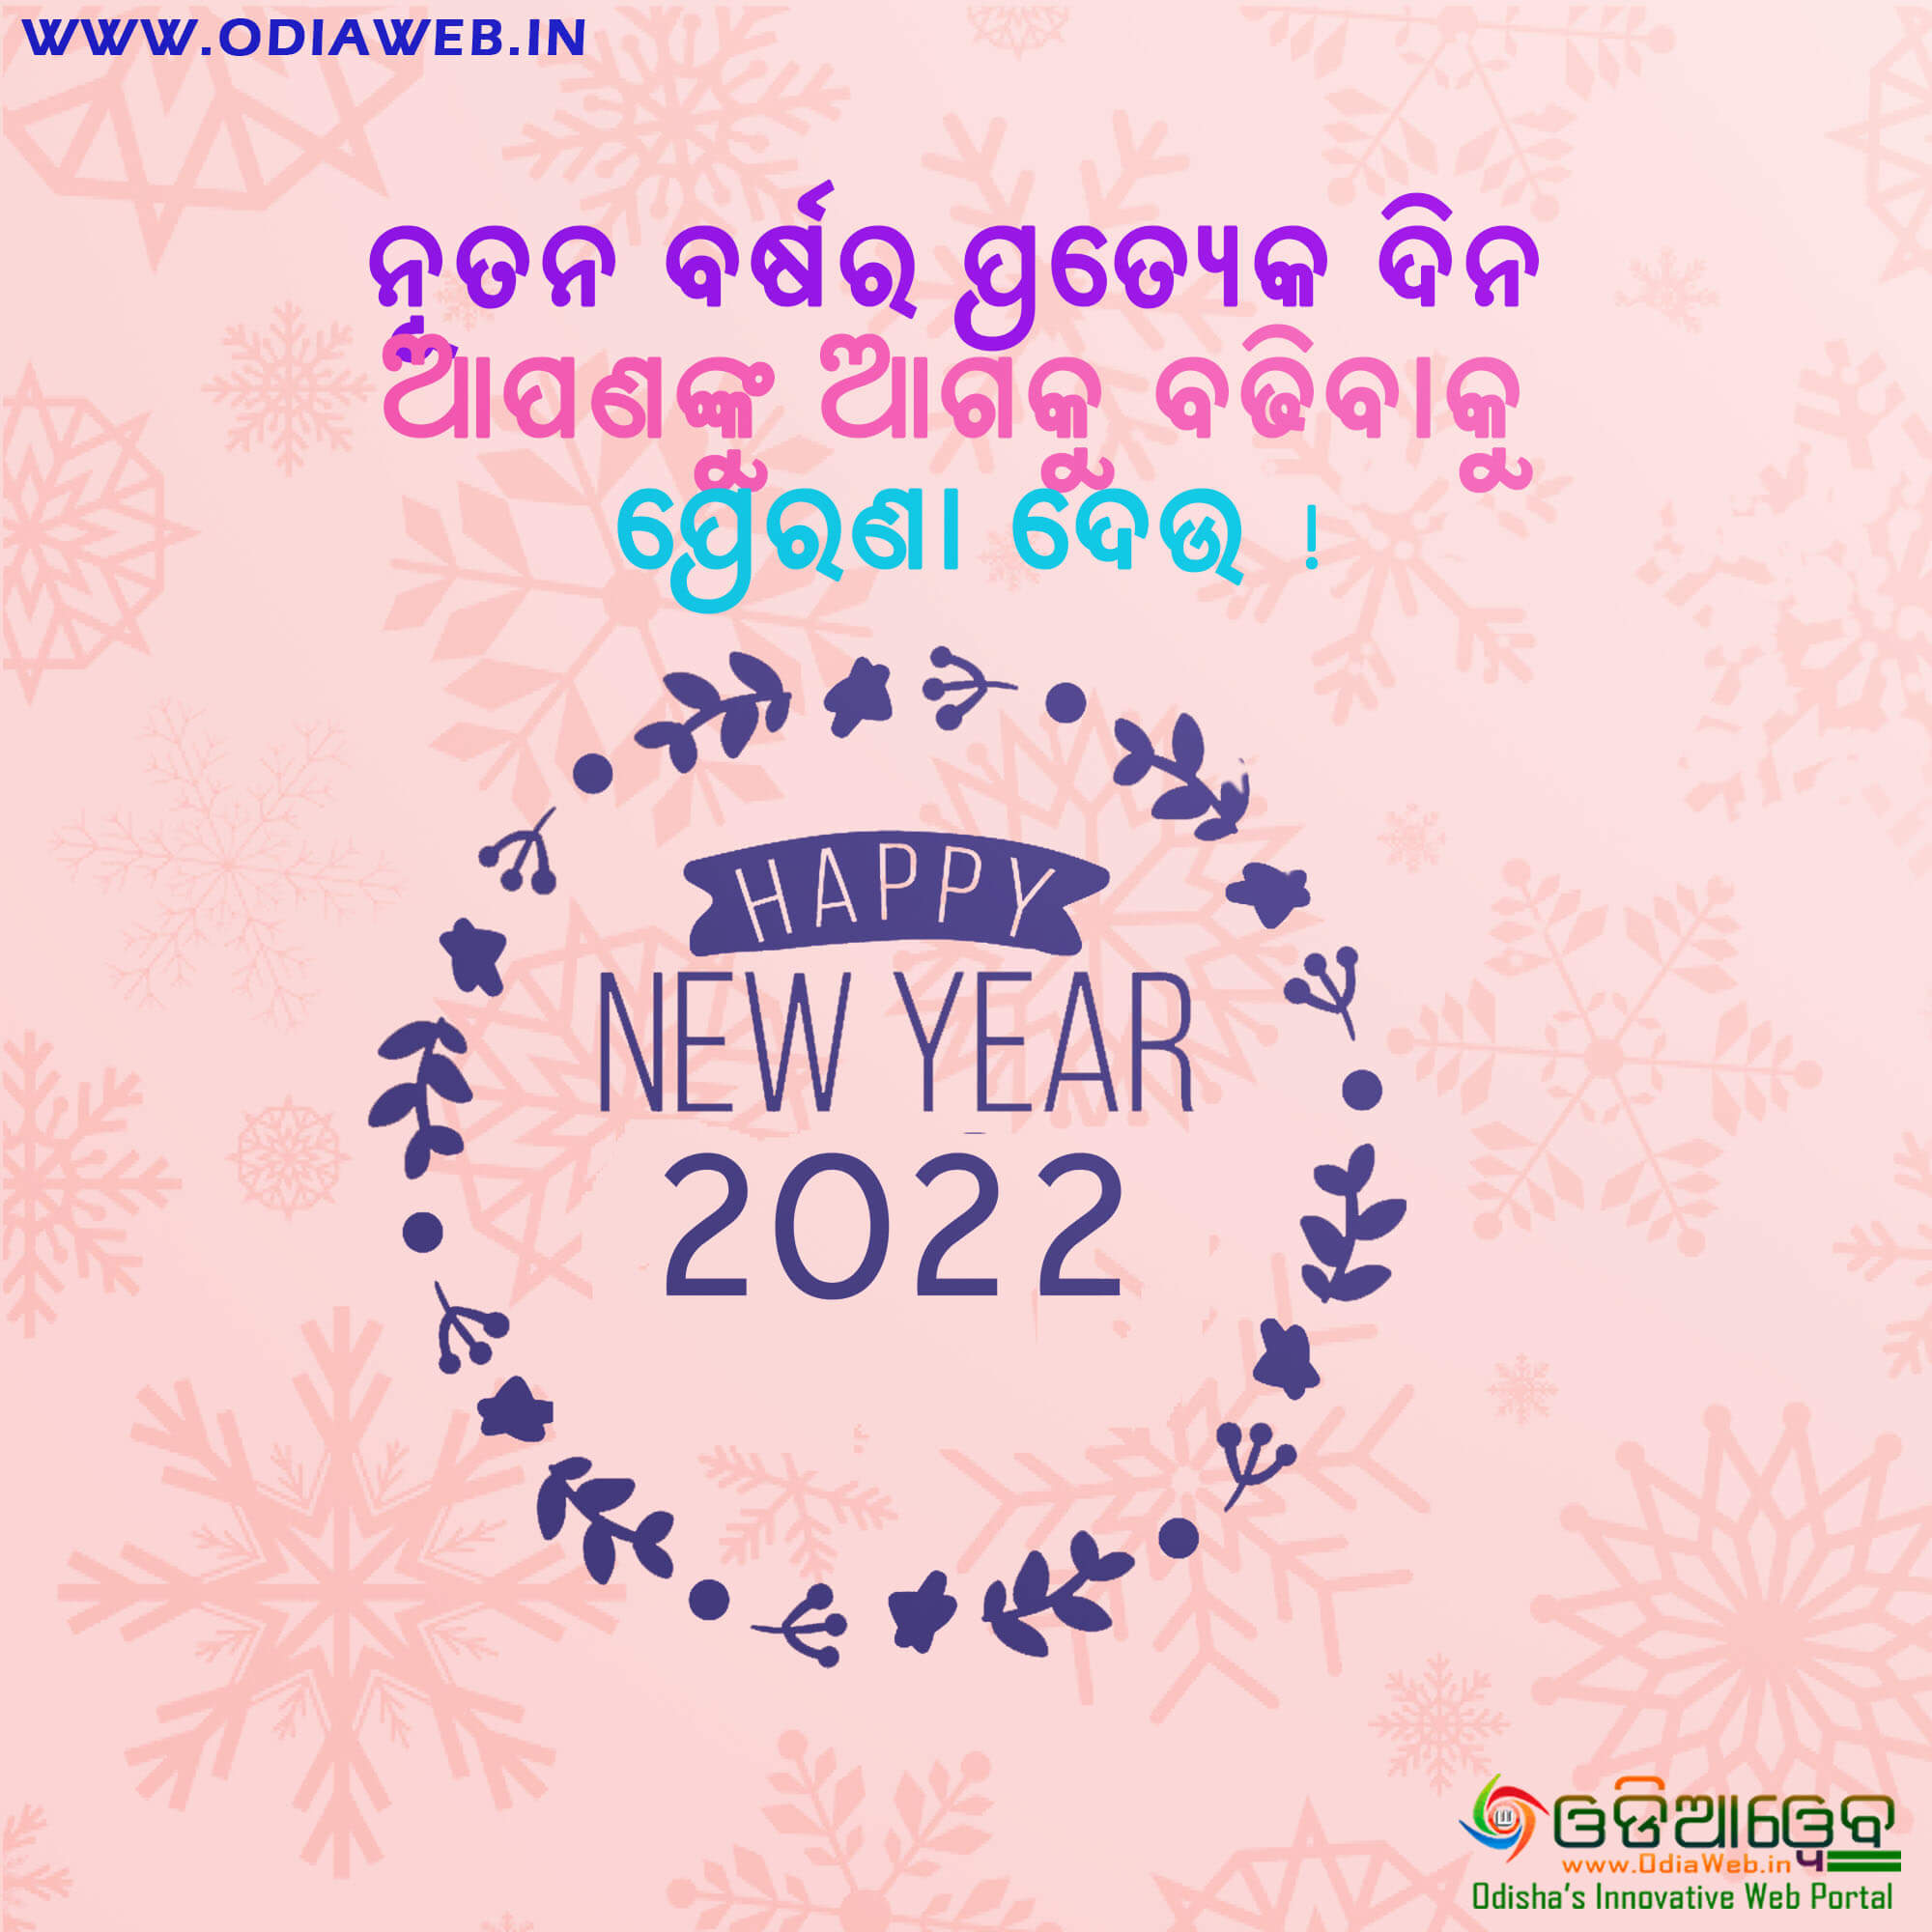 Happy New Year 2022 Wish In Odia